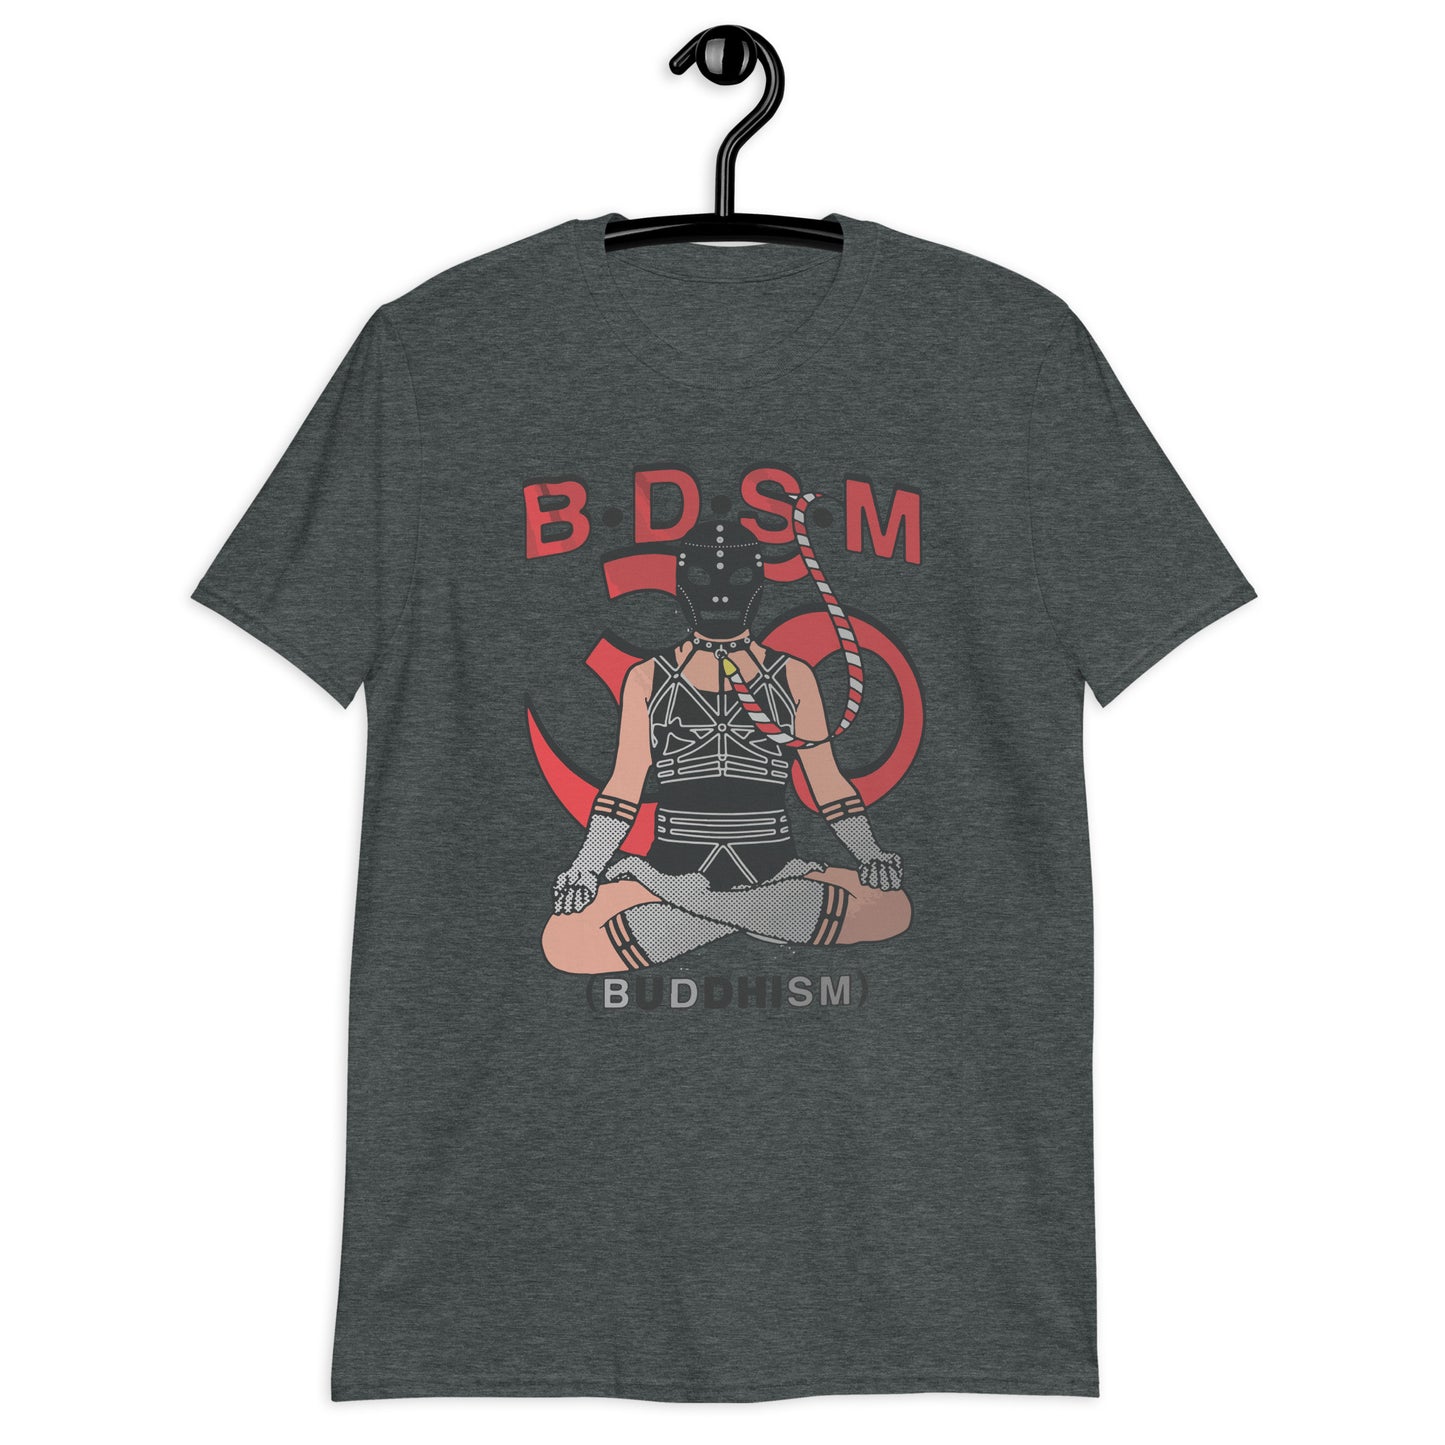 B.D.S.M. (Buddhism) T-Shirt